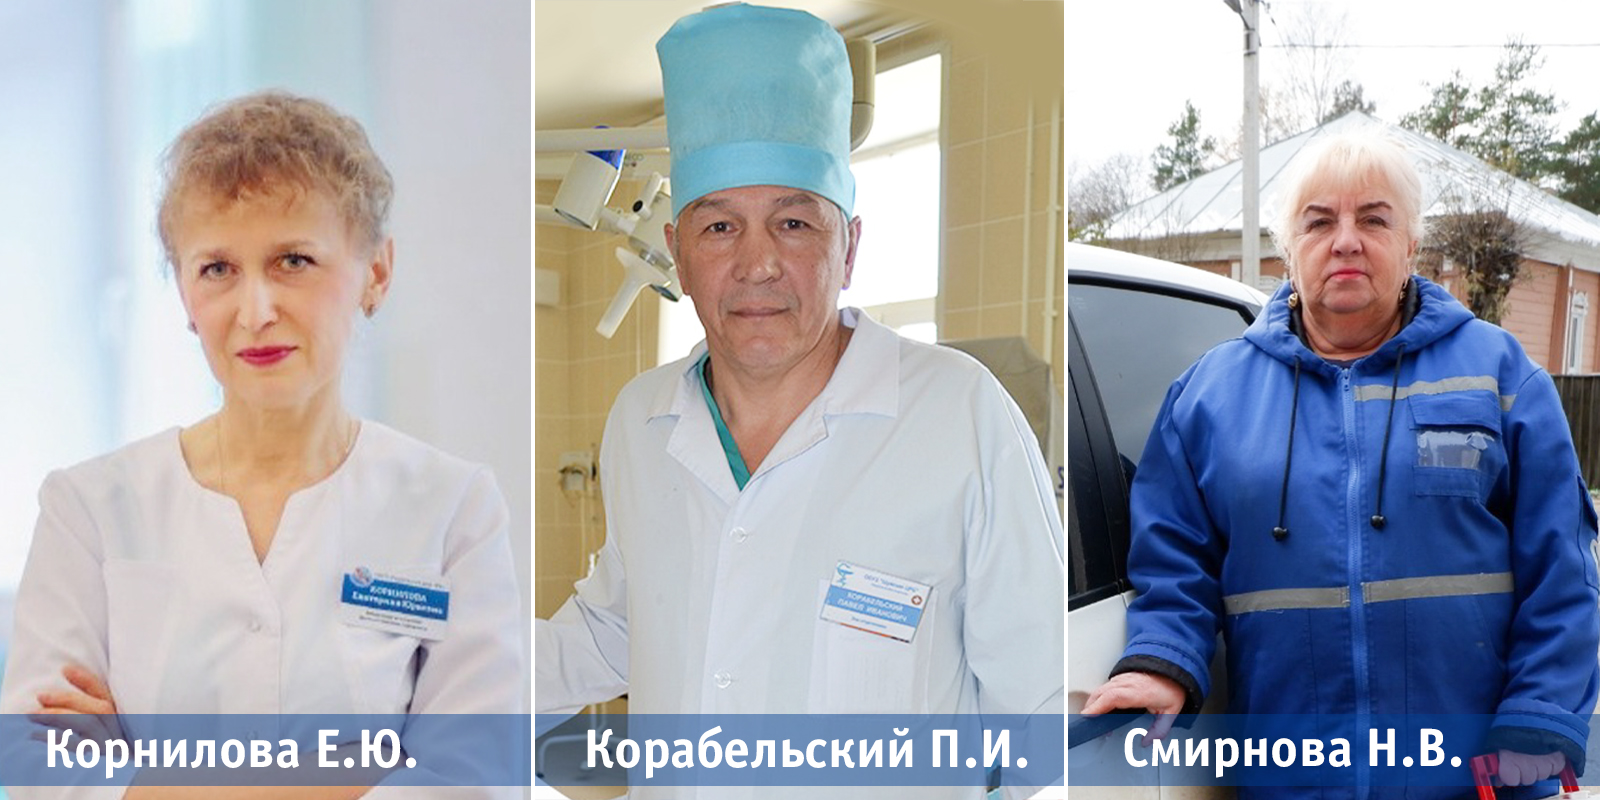 Победителями конкурса "Народный доктор" в октябре стали три врача из Ивановской области